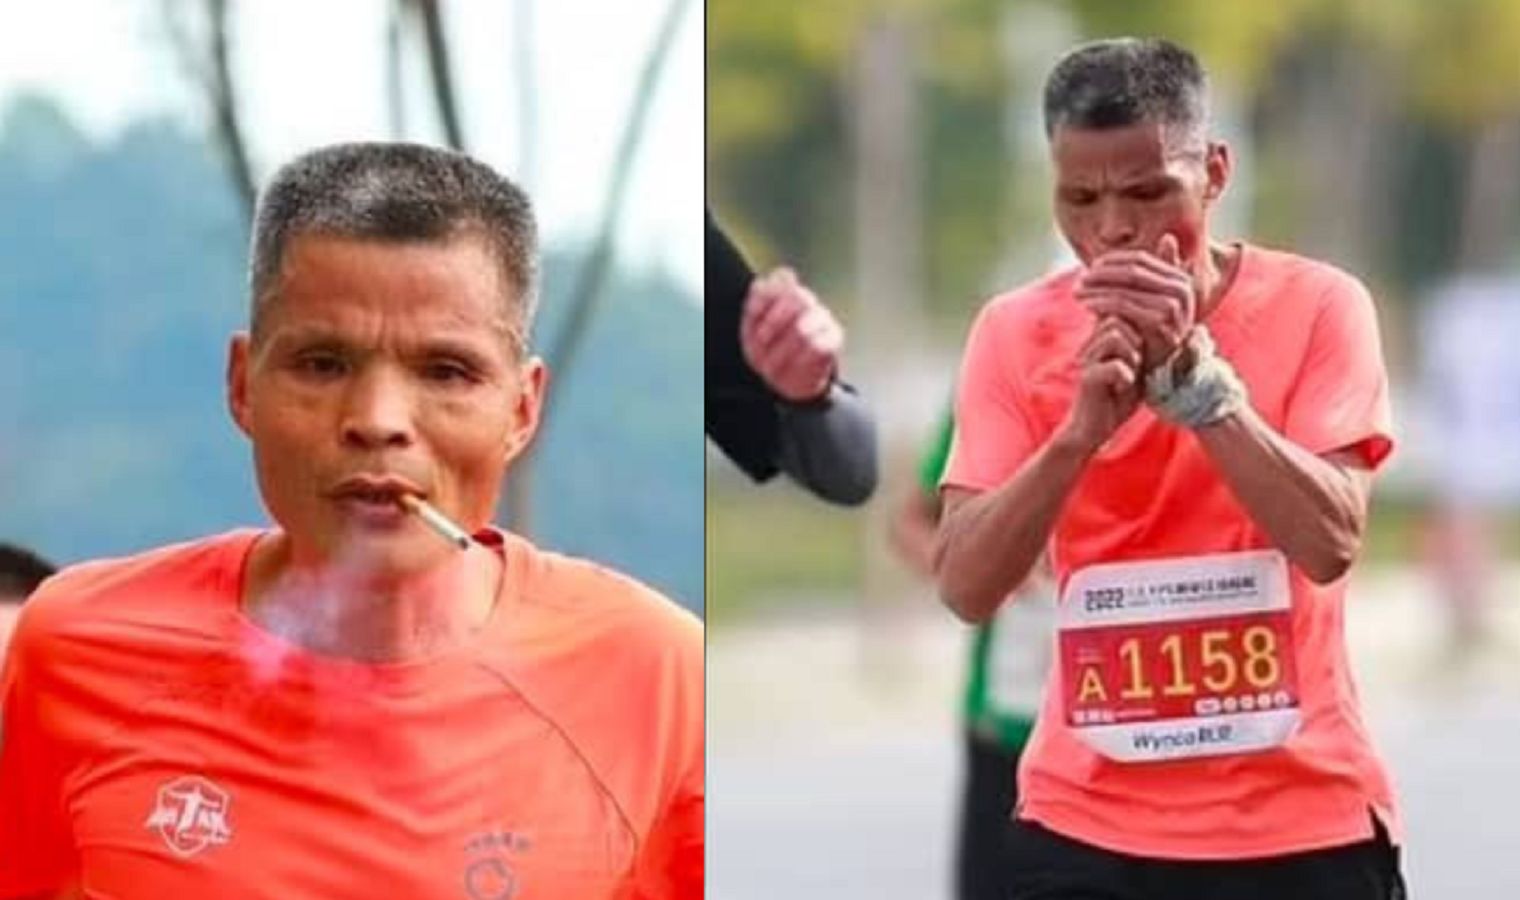 Biegacz palił przez cały maraton. Organizatorzy podjęli decyzję